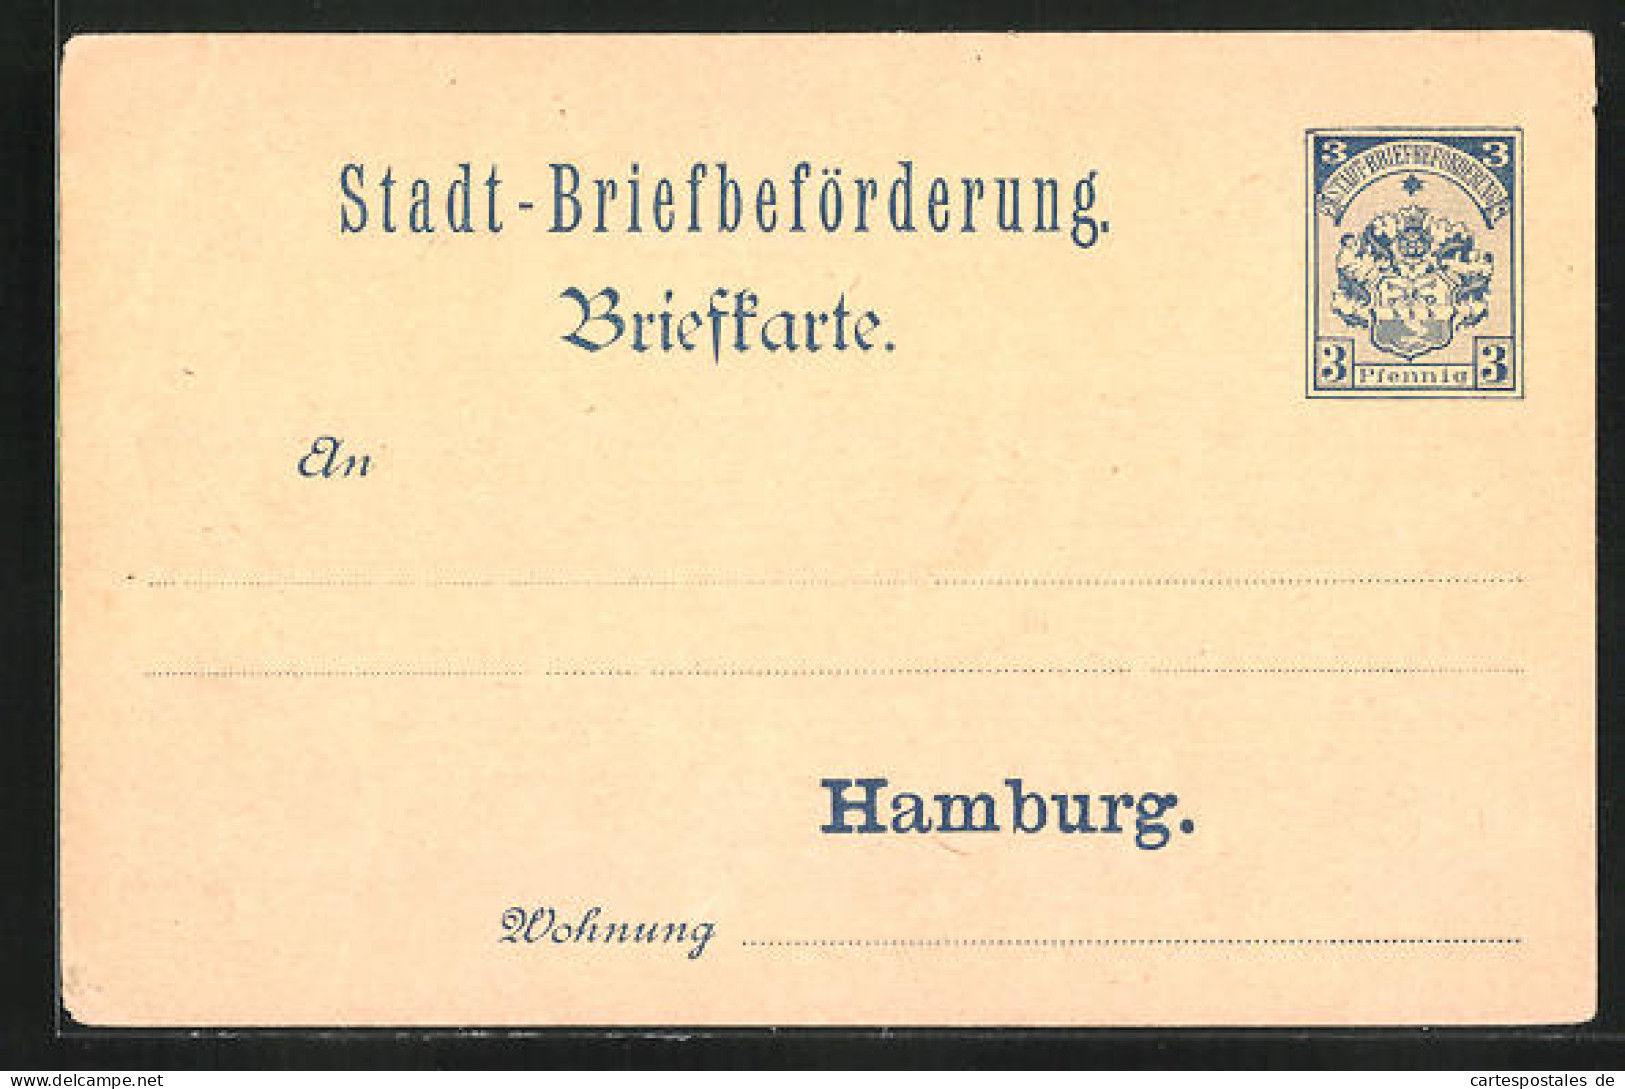 AK Briefkarte Stadt-Briefbeförderung Zu Hamburg, Private Stadtpost, 3 Pfg.  - Briefmarken (Abbildungen)